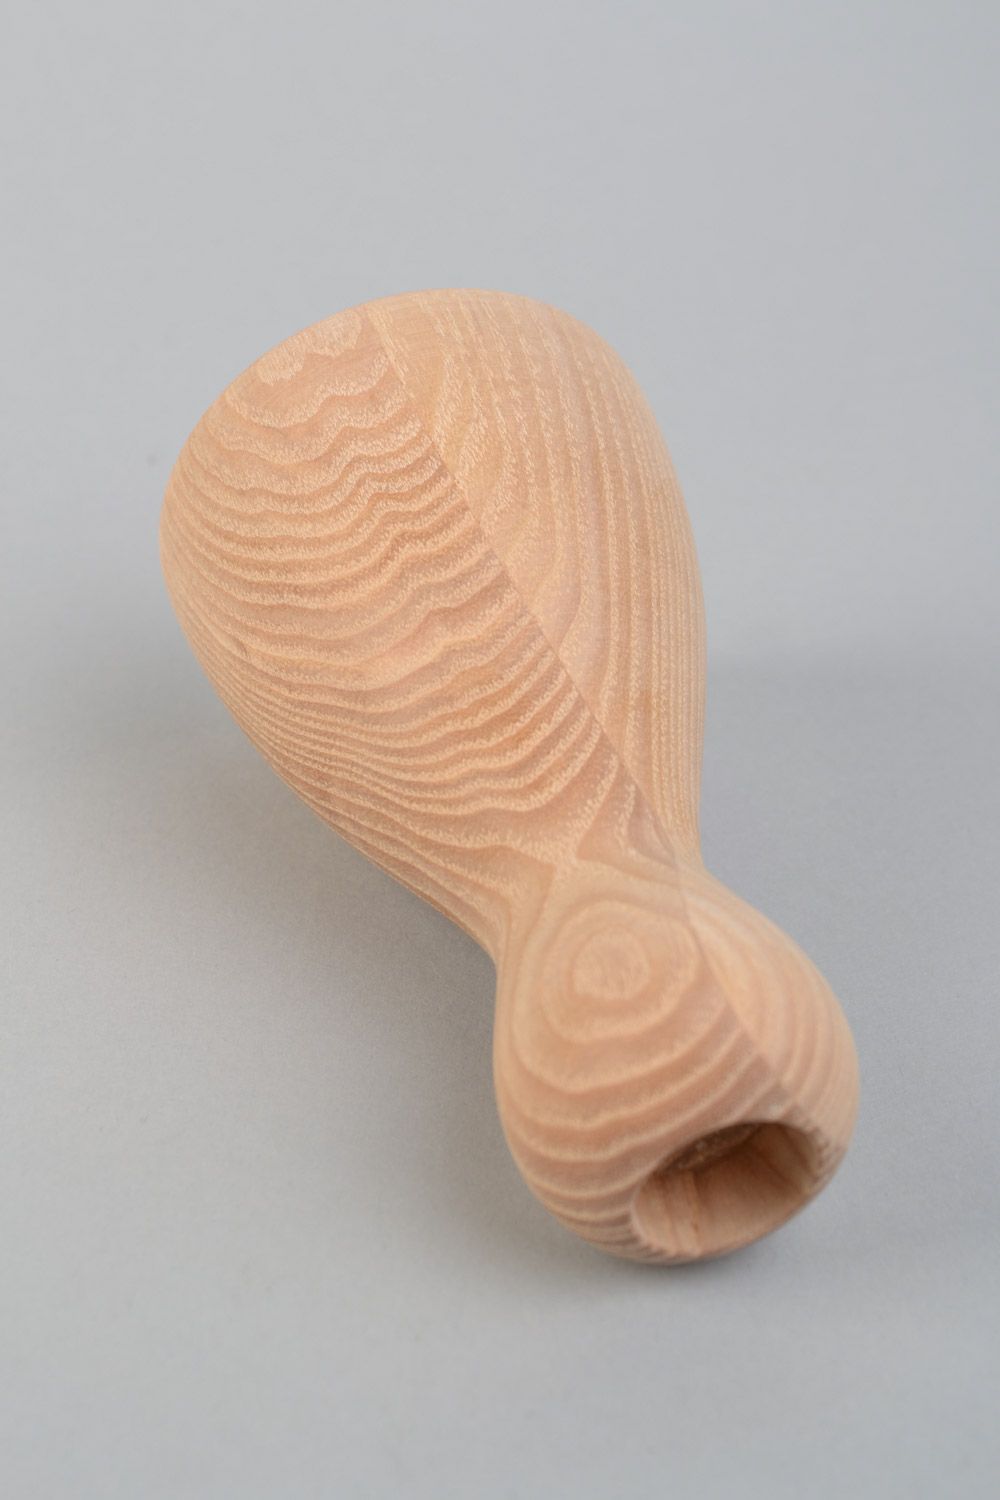 Фигурный деревянный подсвечник ручной работы из клена шлифованый на одну свечу фото 5